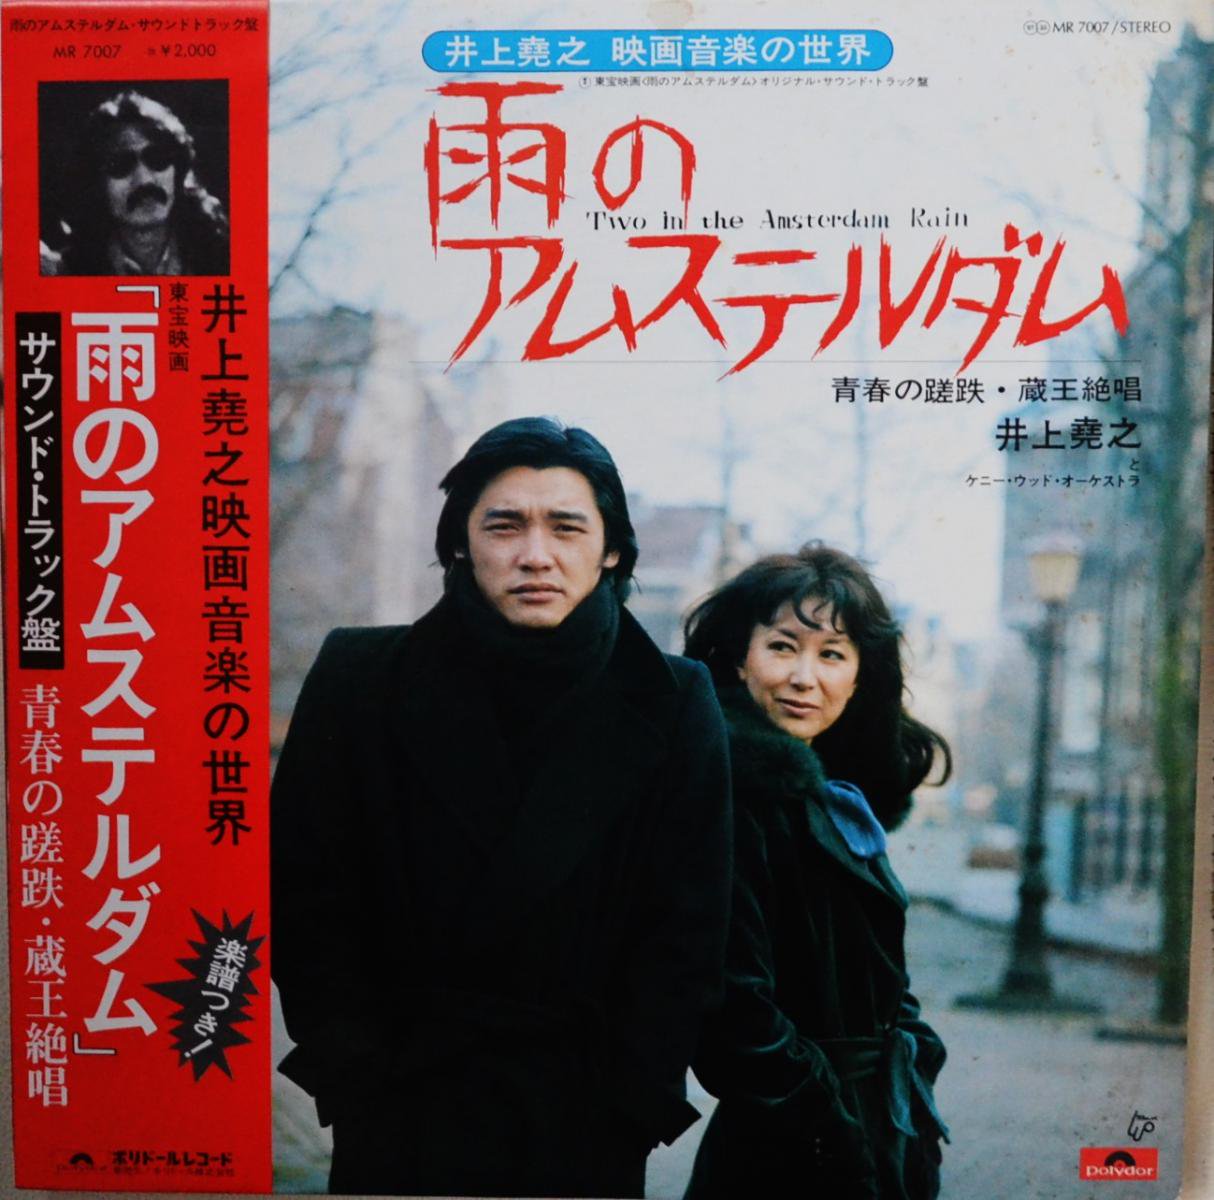 井上堯之 (映画音楽の世界) / 雨のアムステルダム (オリジナル・サウンド・トラック) (LP)